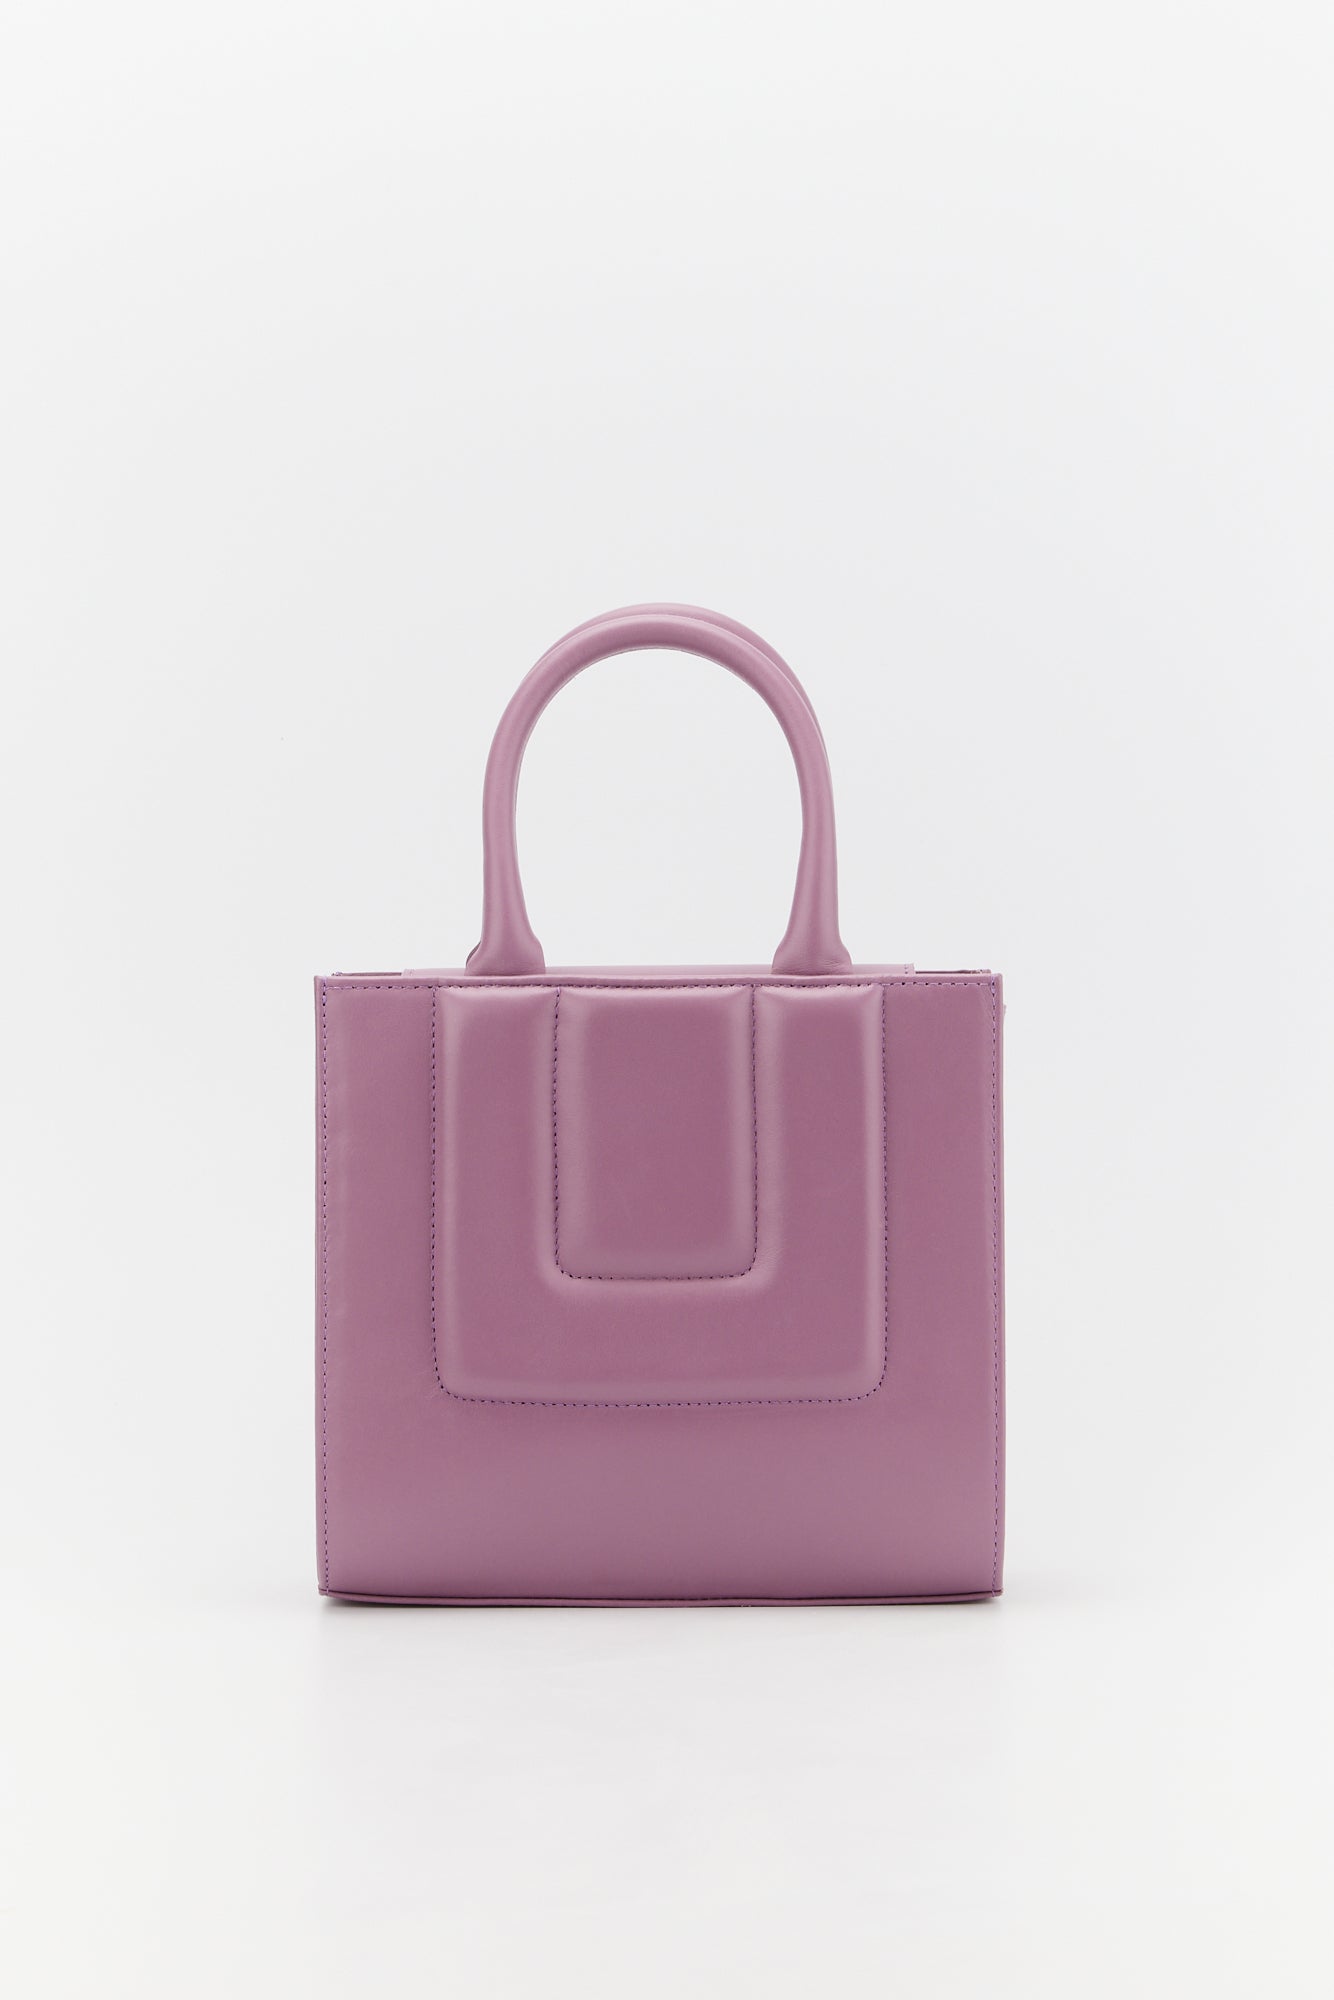 Basket Bag - Lavender - Smooth Leather